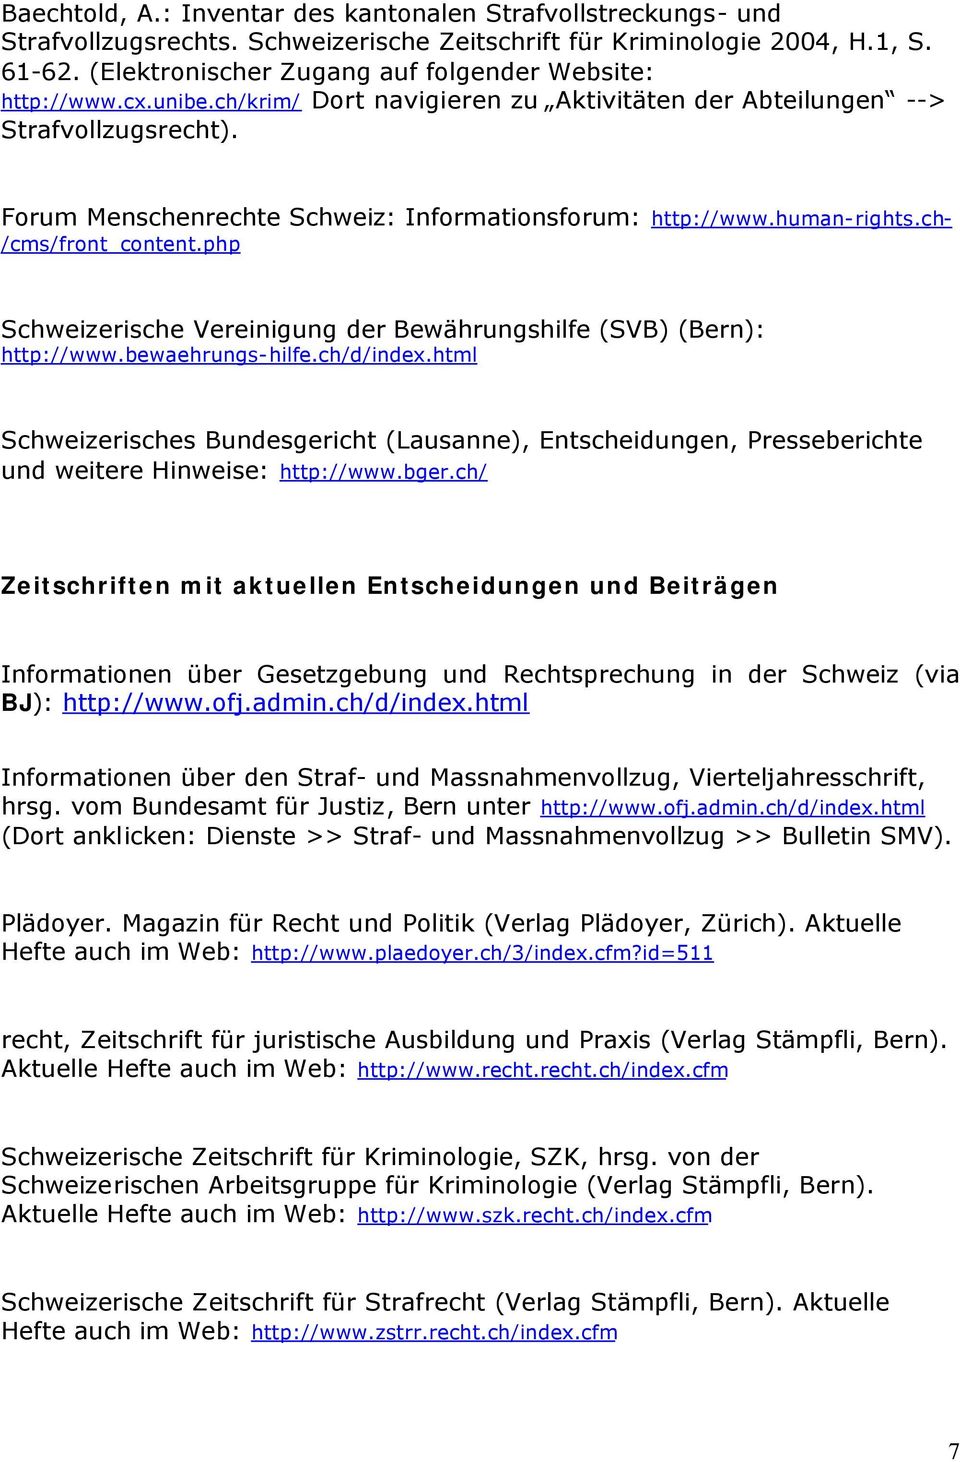 Forum Menschenrechte Schweiz: Informationsforum: http://www.human-rights.ch- /cms/front_content.php Schweizerische Vereinigung der Bewährungshilfe (SVB) (Bern): http://www.bewaehrungs-hilfe.